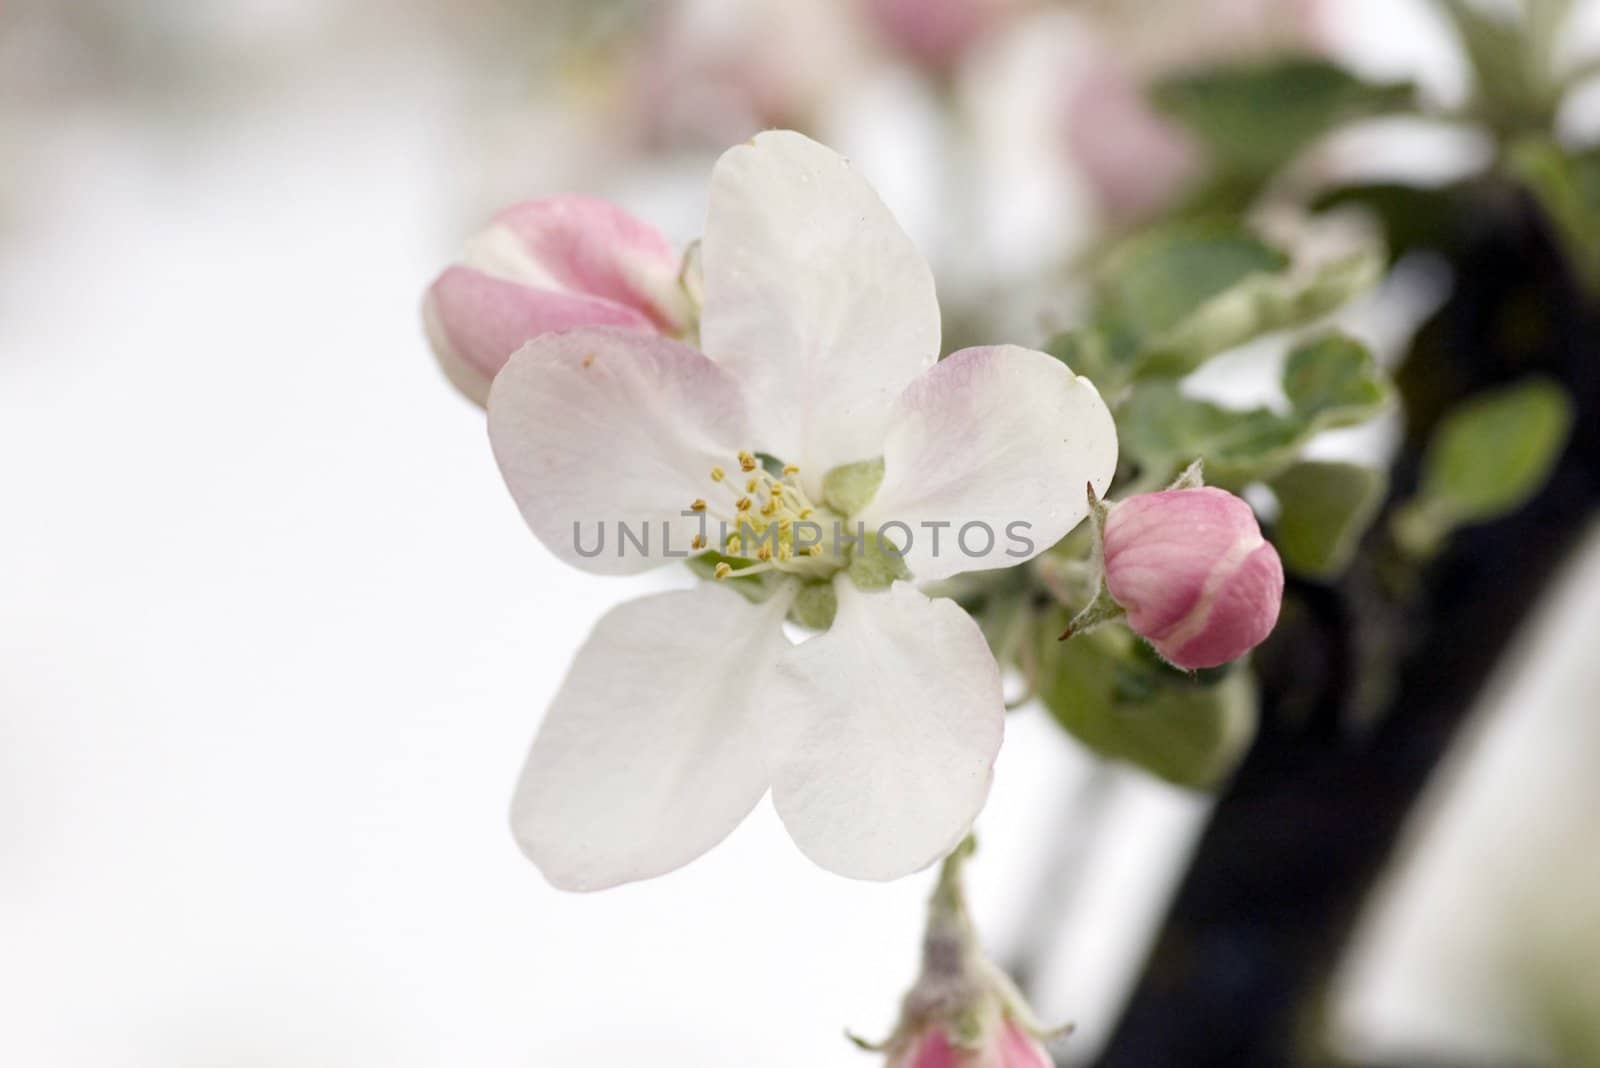 Closeup of apple blossoms. Springtime.